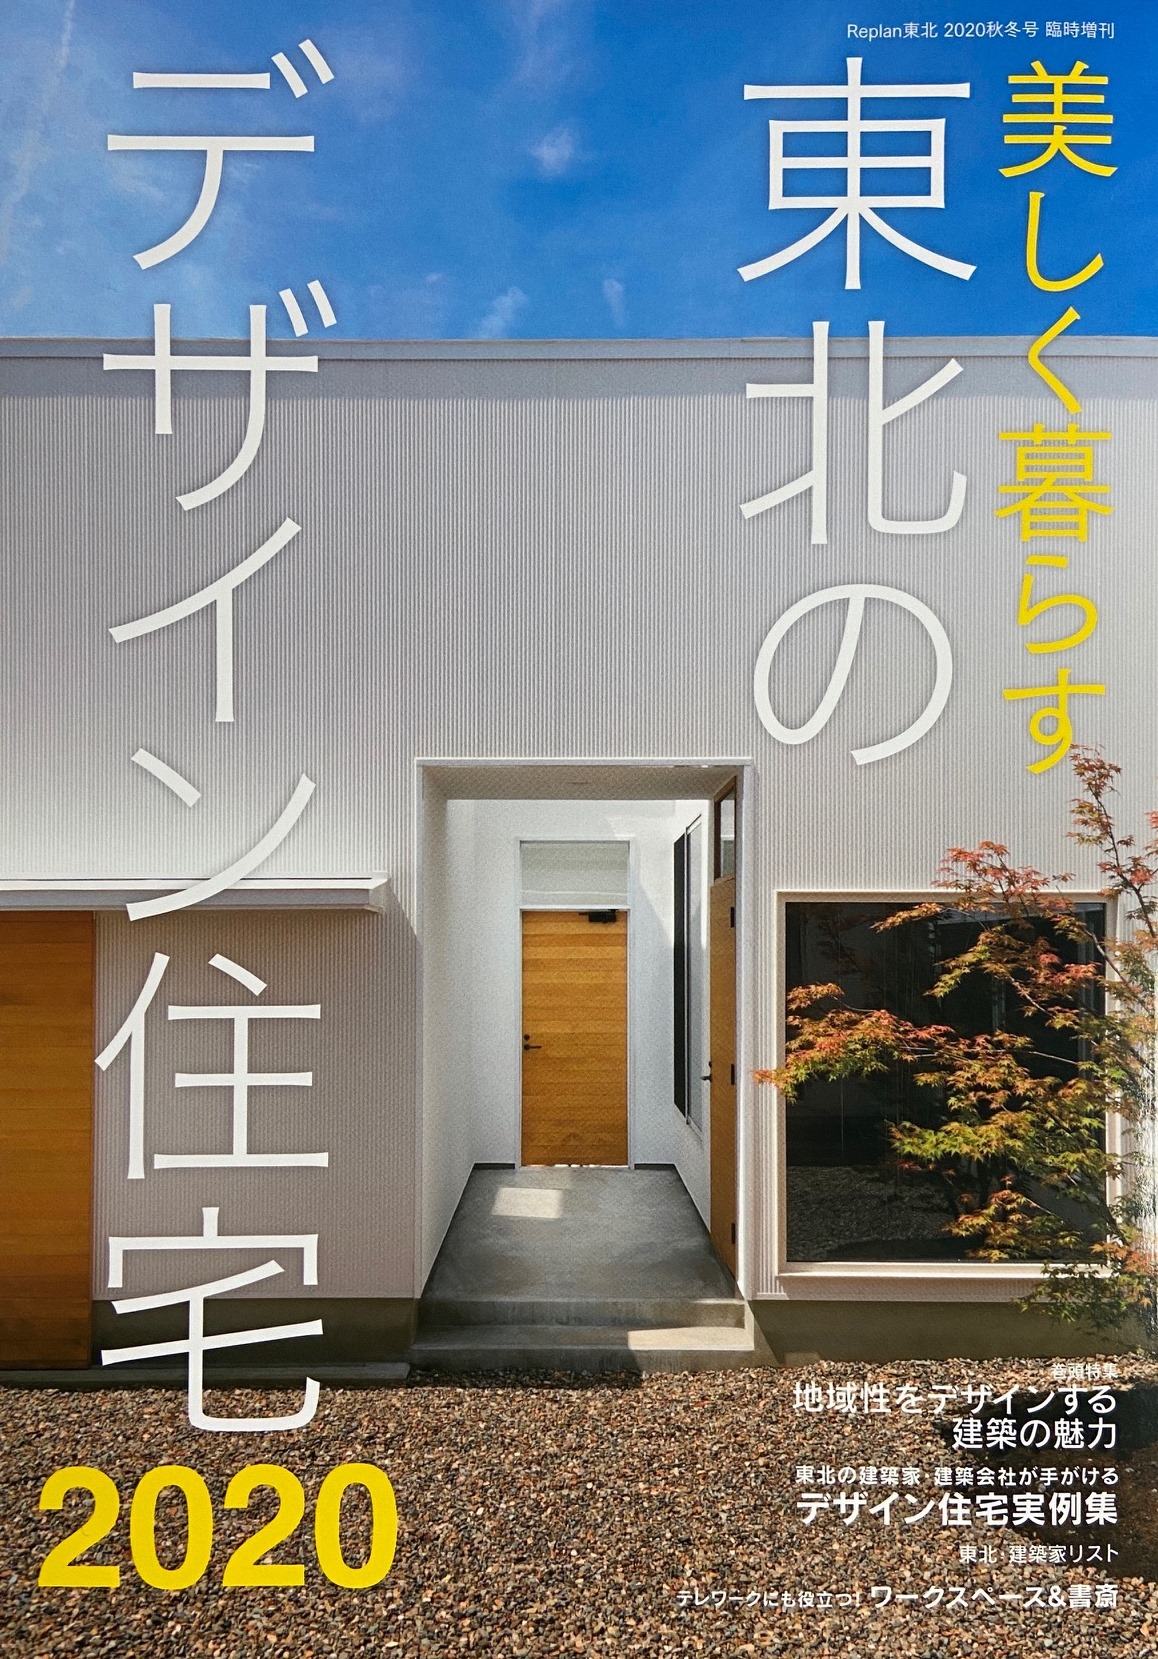 雑誌掲載 美しく暮らす 東北のデザイン住宅 有限会社吉田建築設計 計画事務所